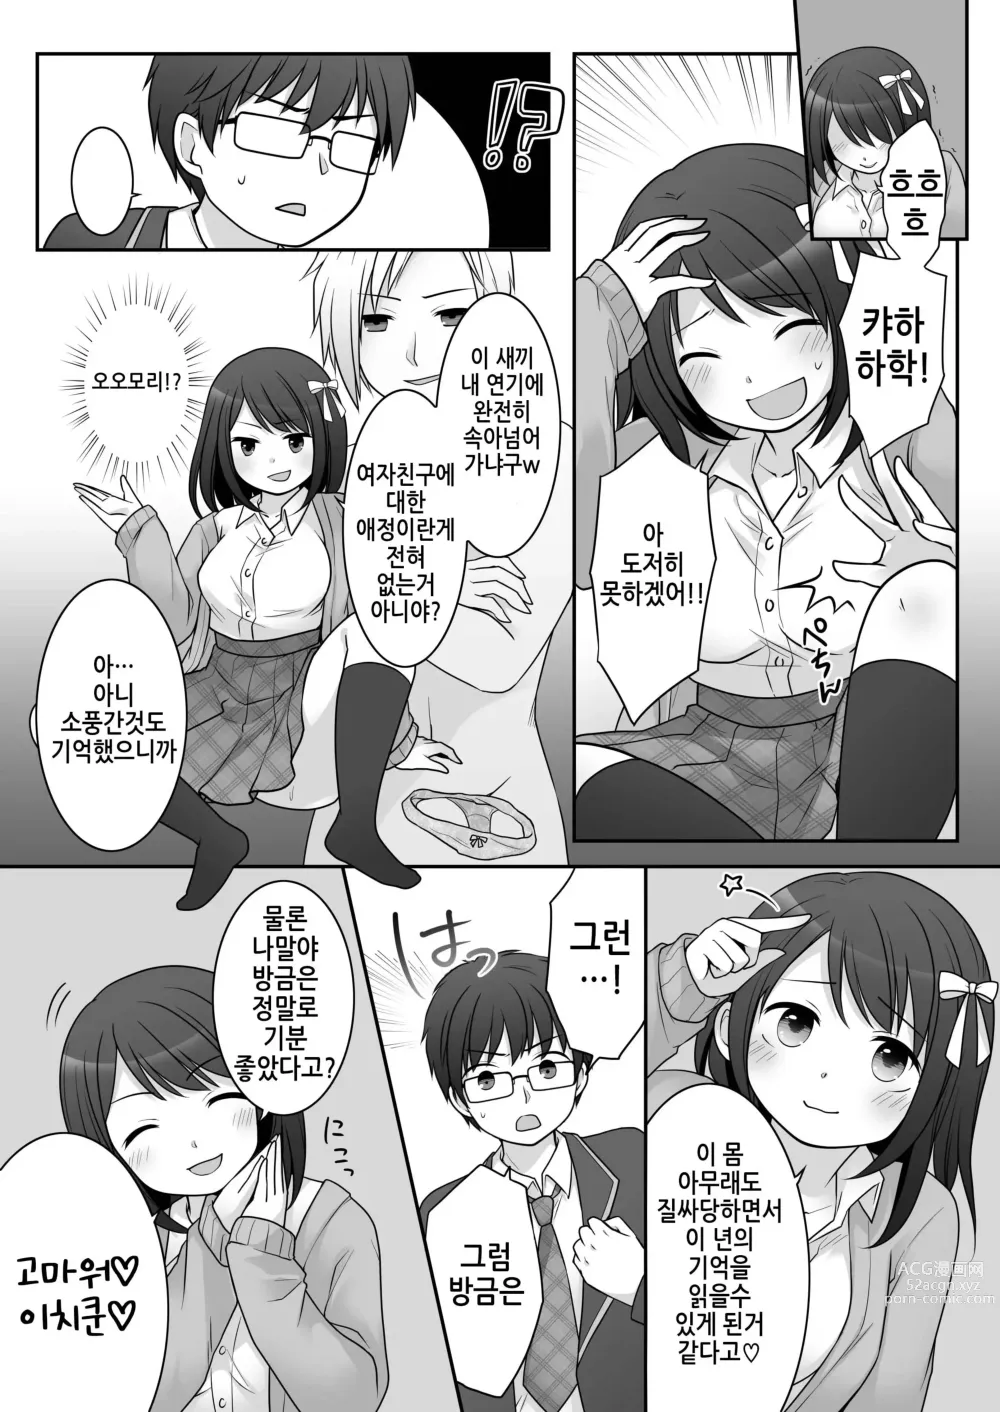 Page 29 of doujinshi 불량 in 그녀 내 여자친구의 몸뚱이는 불량남에게 납치되었다.